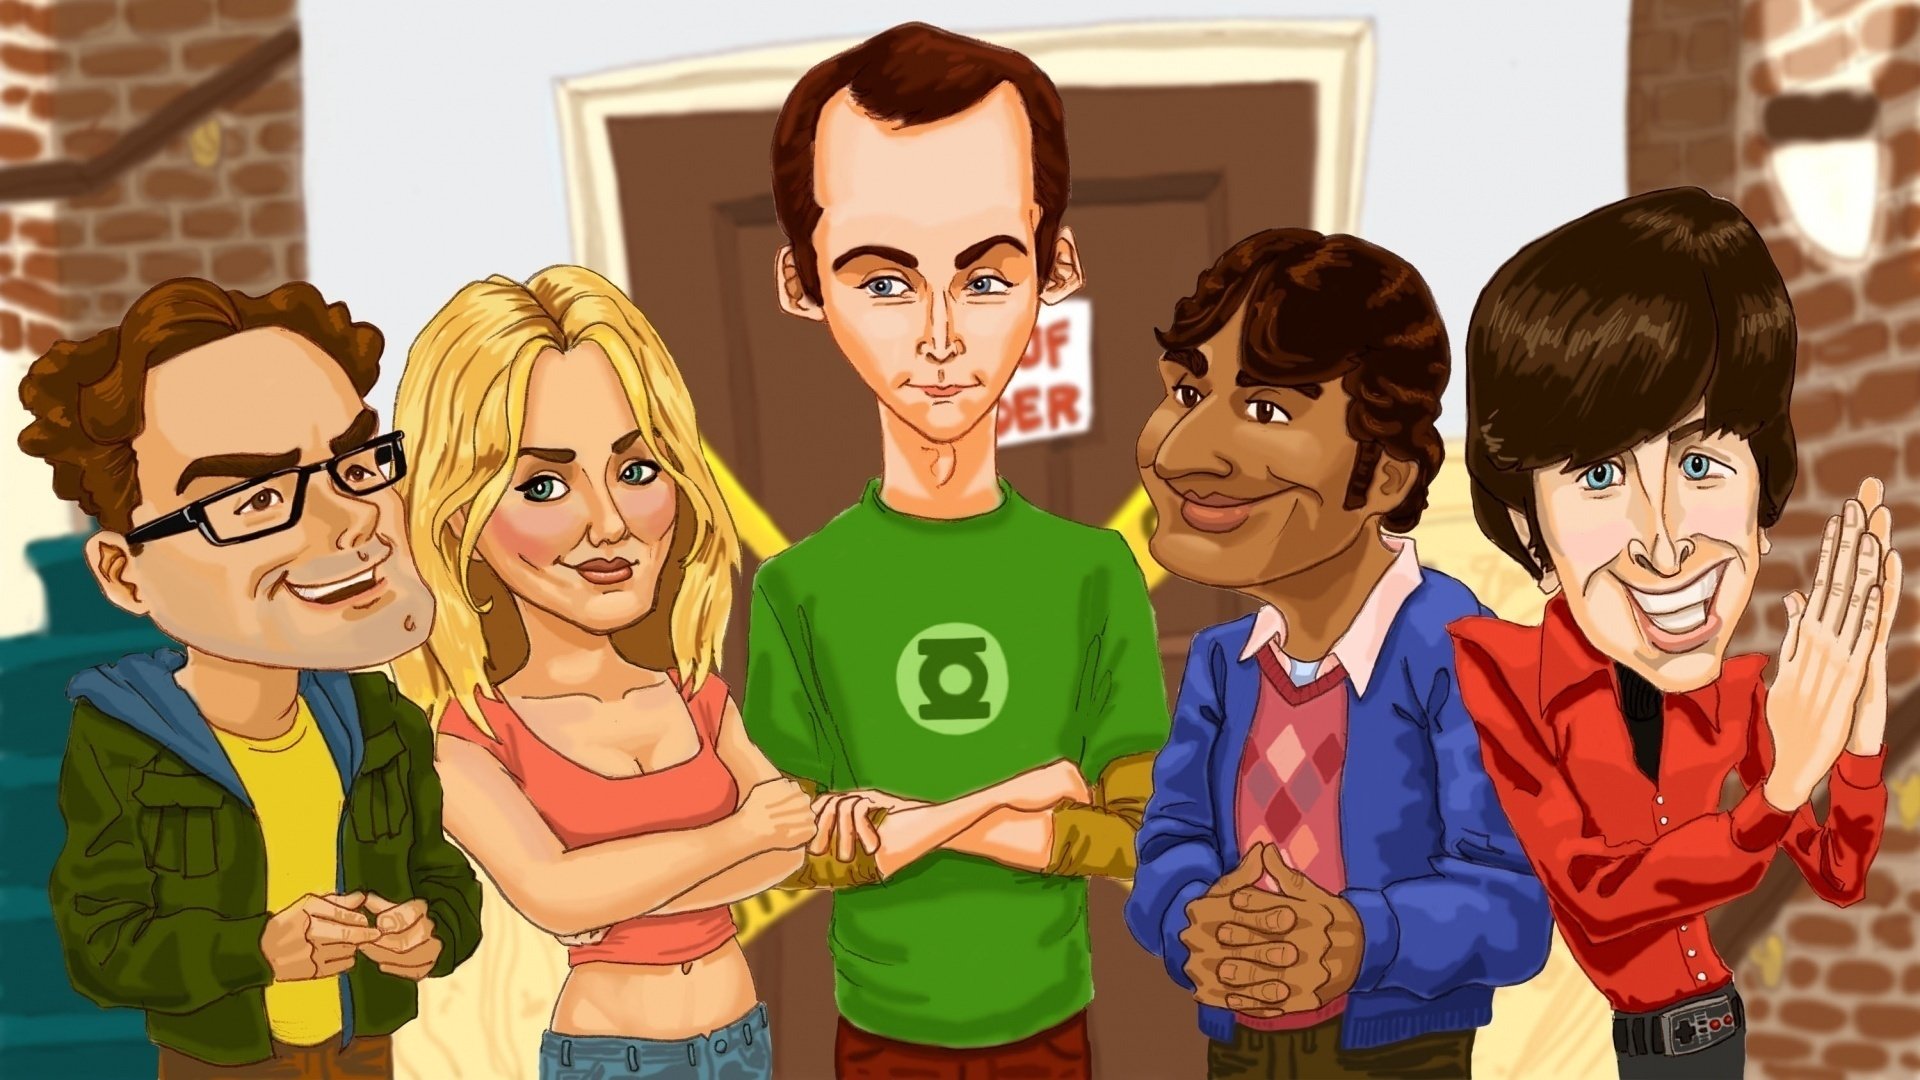 Caricature Big Bang Theory - HD Wallpaper 